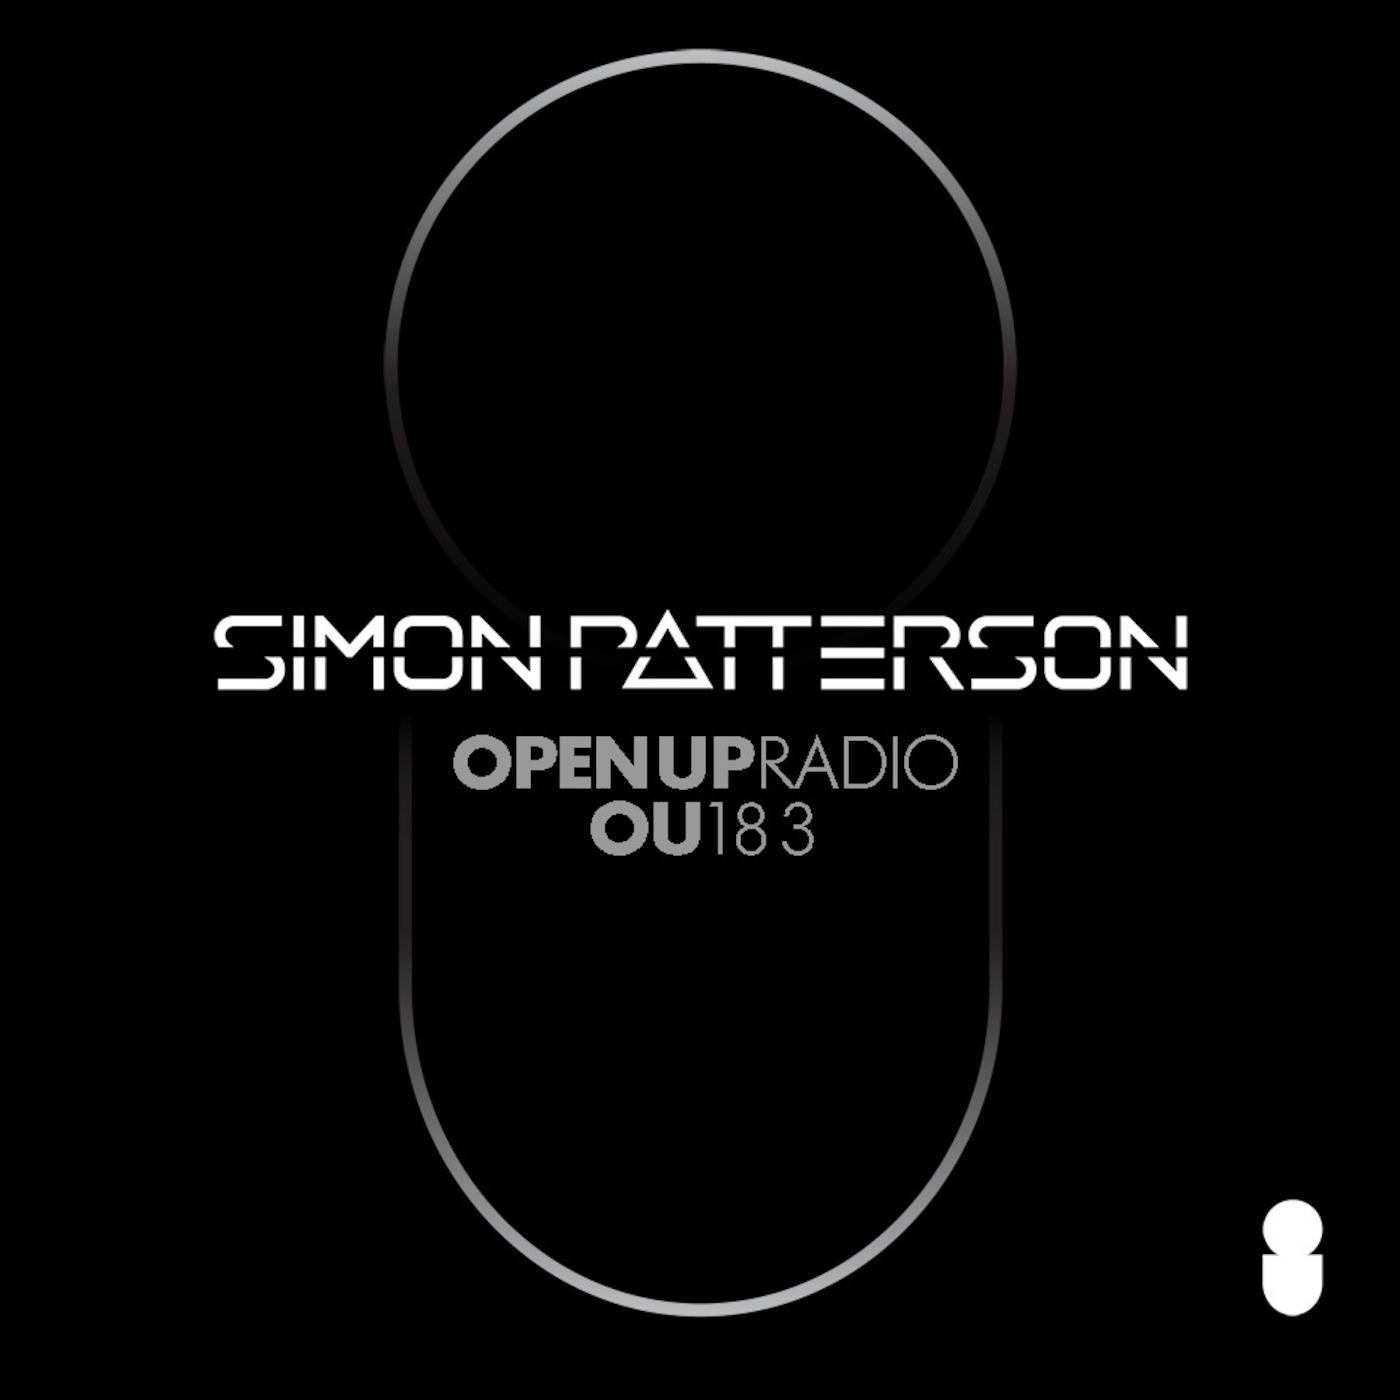 Simon Patterson - Open Up - 183